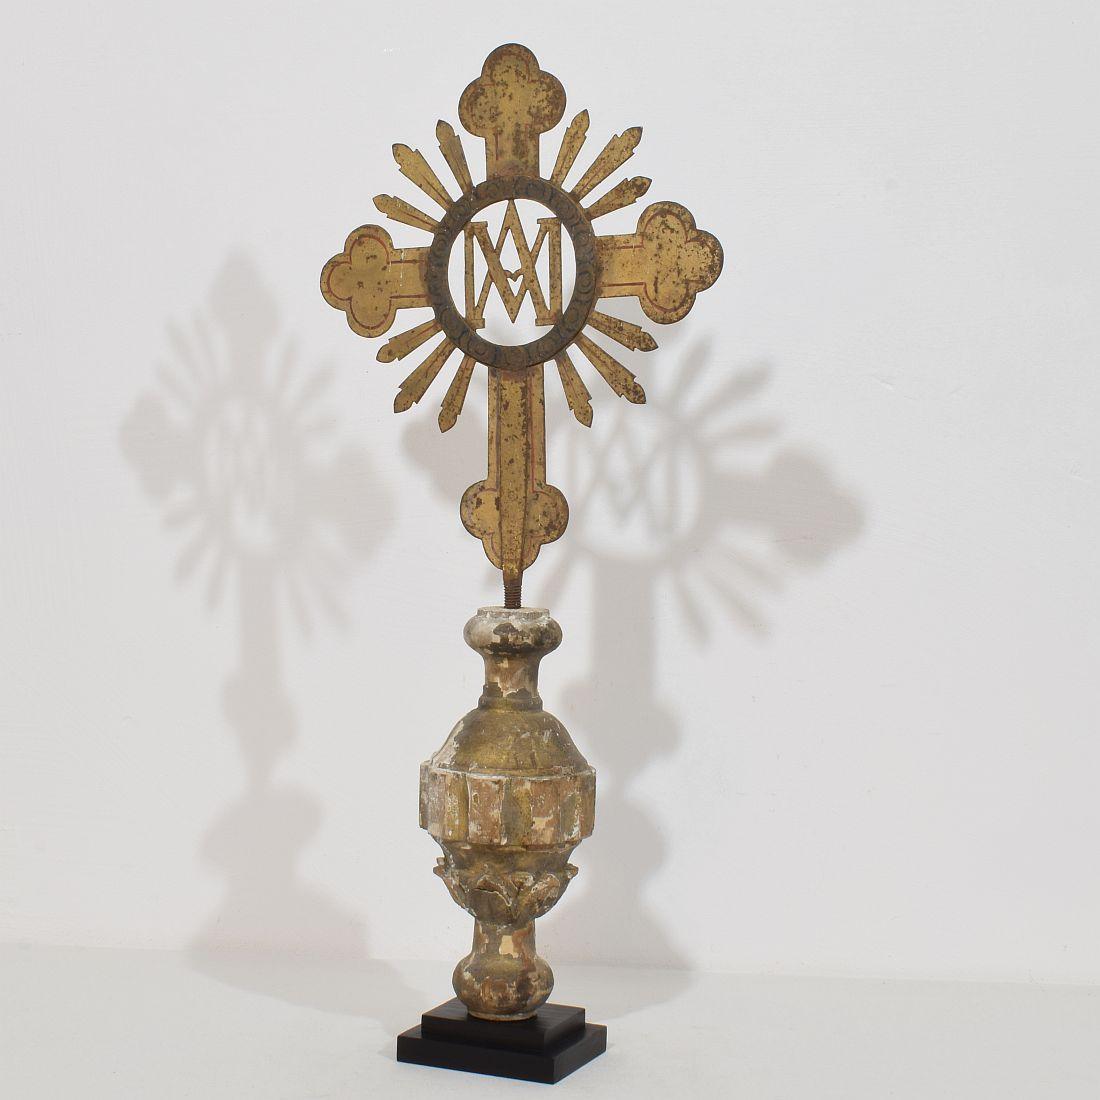 Belle croix de procession baroque en métal doré avec une belle patine.
France vers 1750. Usures et petites pertes. 
Les mesures incluent le socle en bois.